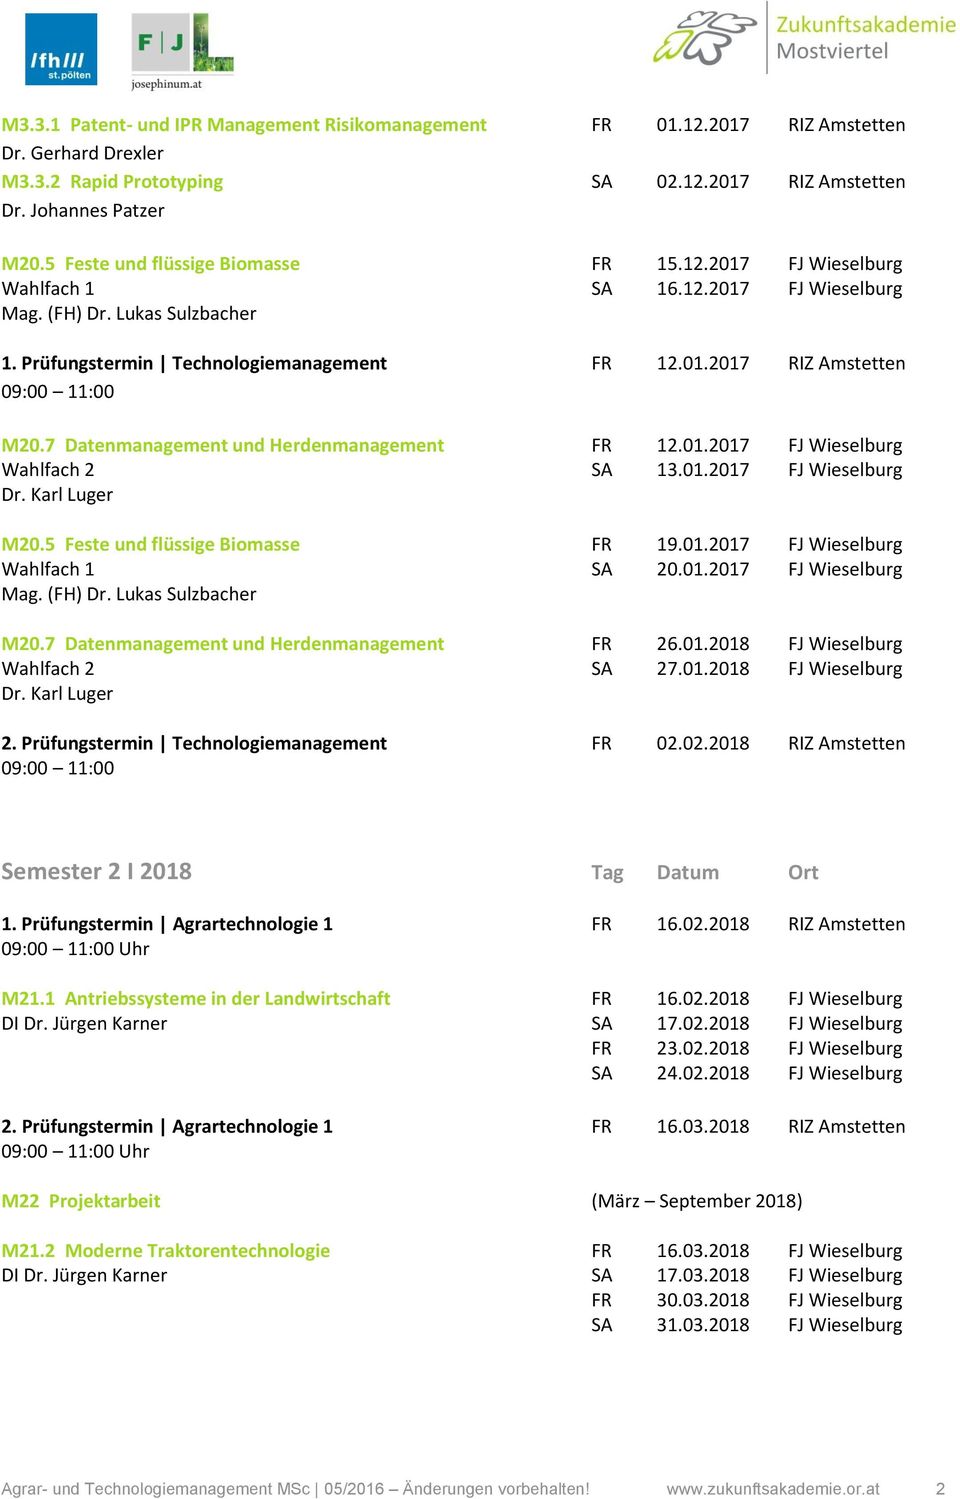 7 Datenmanagement und Herdenmanagement FR 12.01.2017 FJ Wieselburg Wahlfach 2 SA 13.01.2017 FJ Wieselburg Dr. Karl Luger M20.5 Feste und flüssige Biomasse FR 19.01.2017 FJ Wieselburg Wahlfach 1 SA 20.